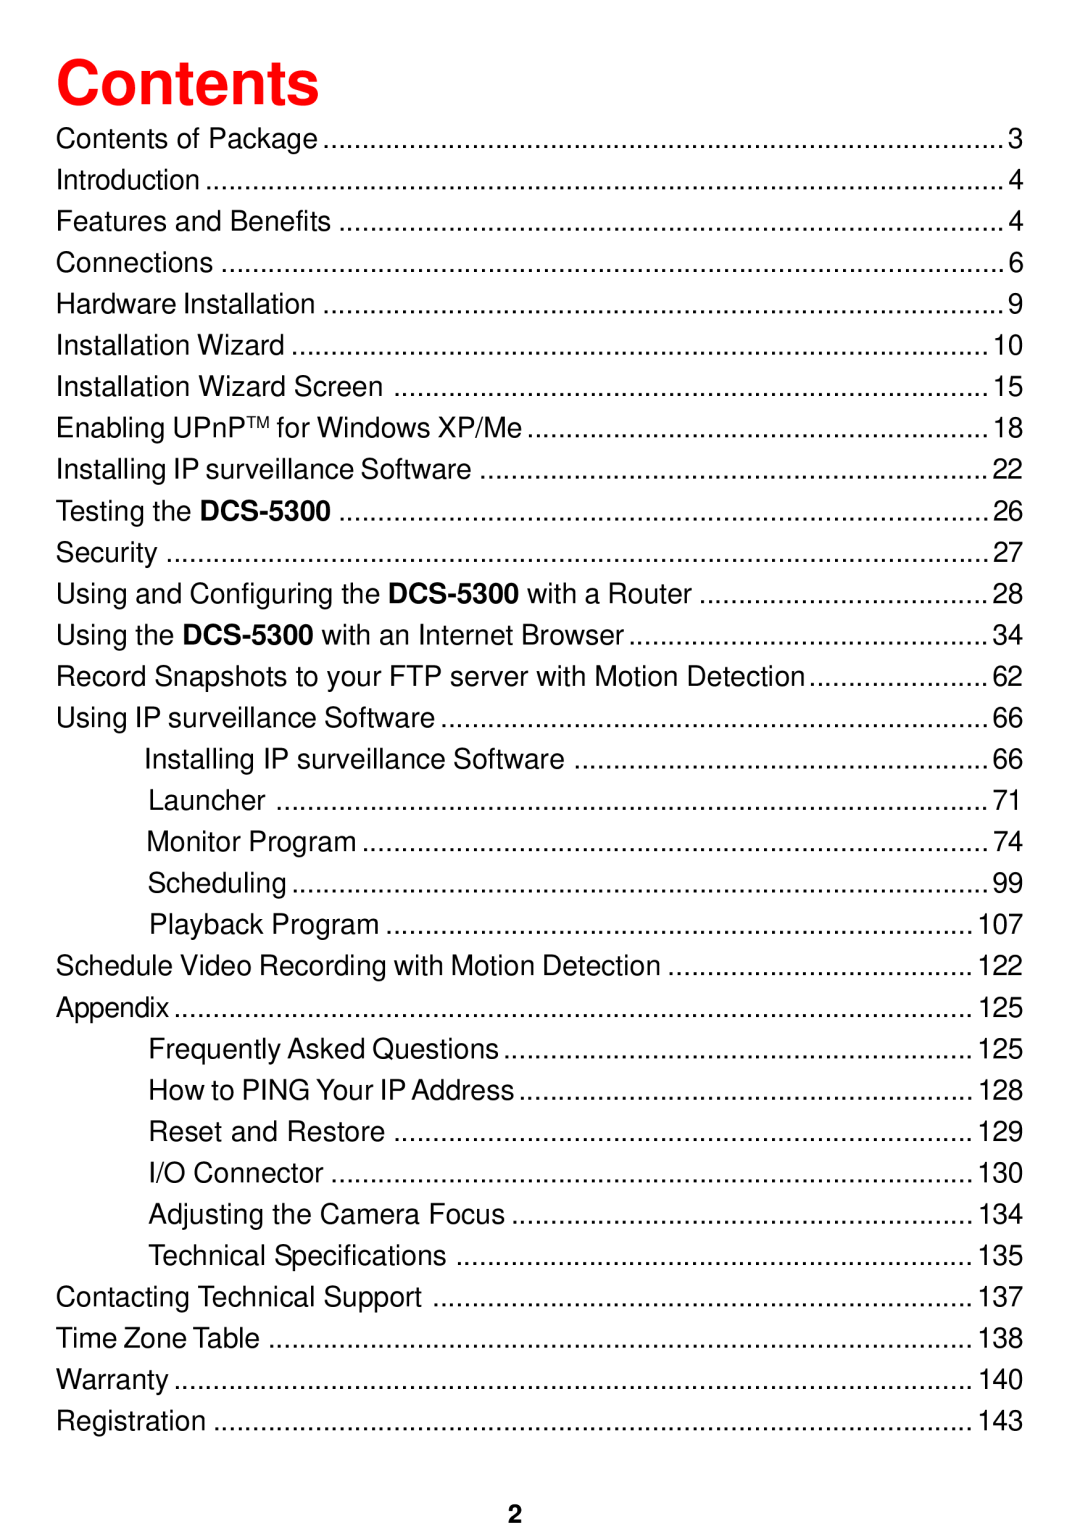 D-Link DCS-5300 manual Contents 